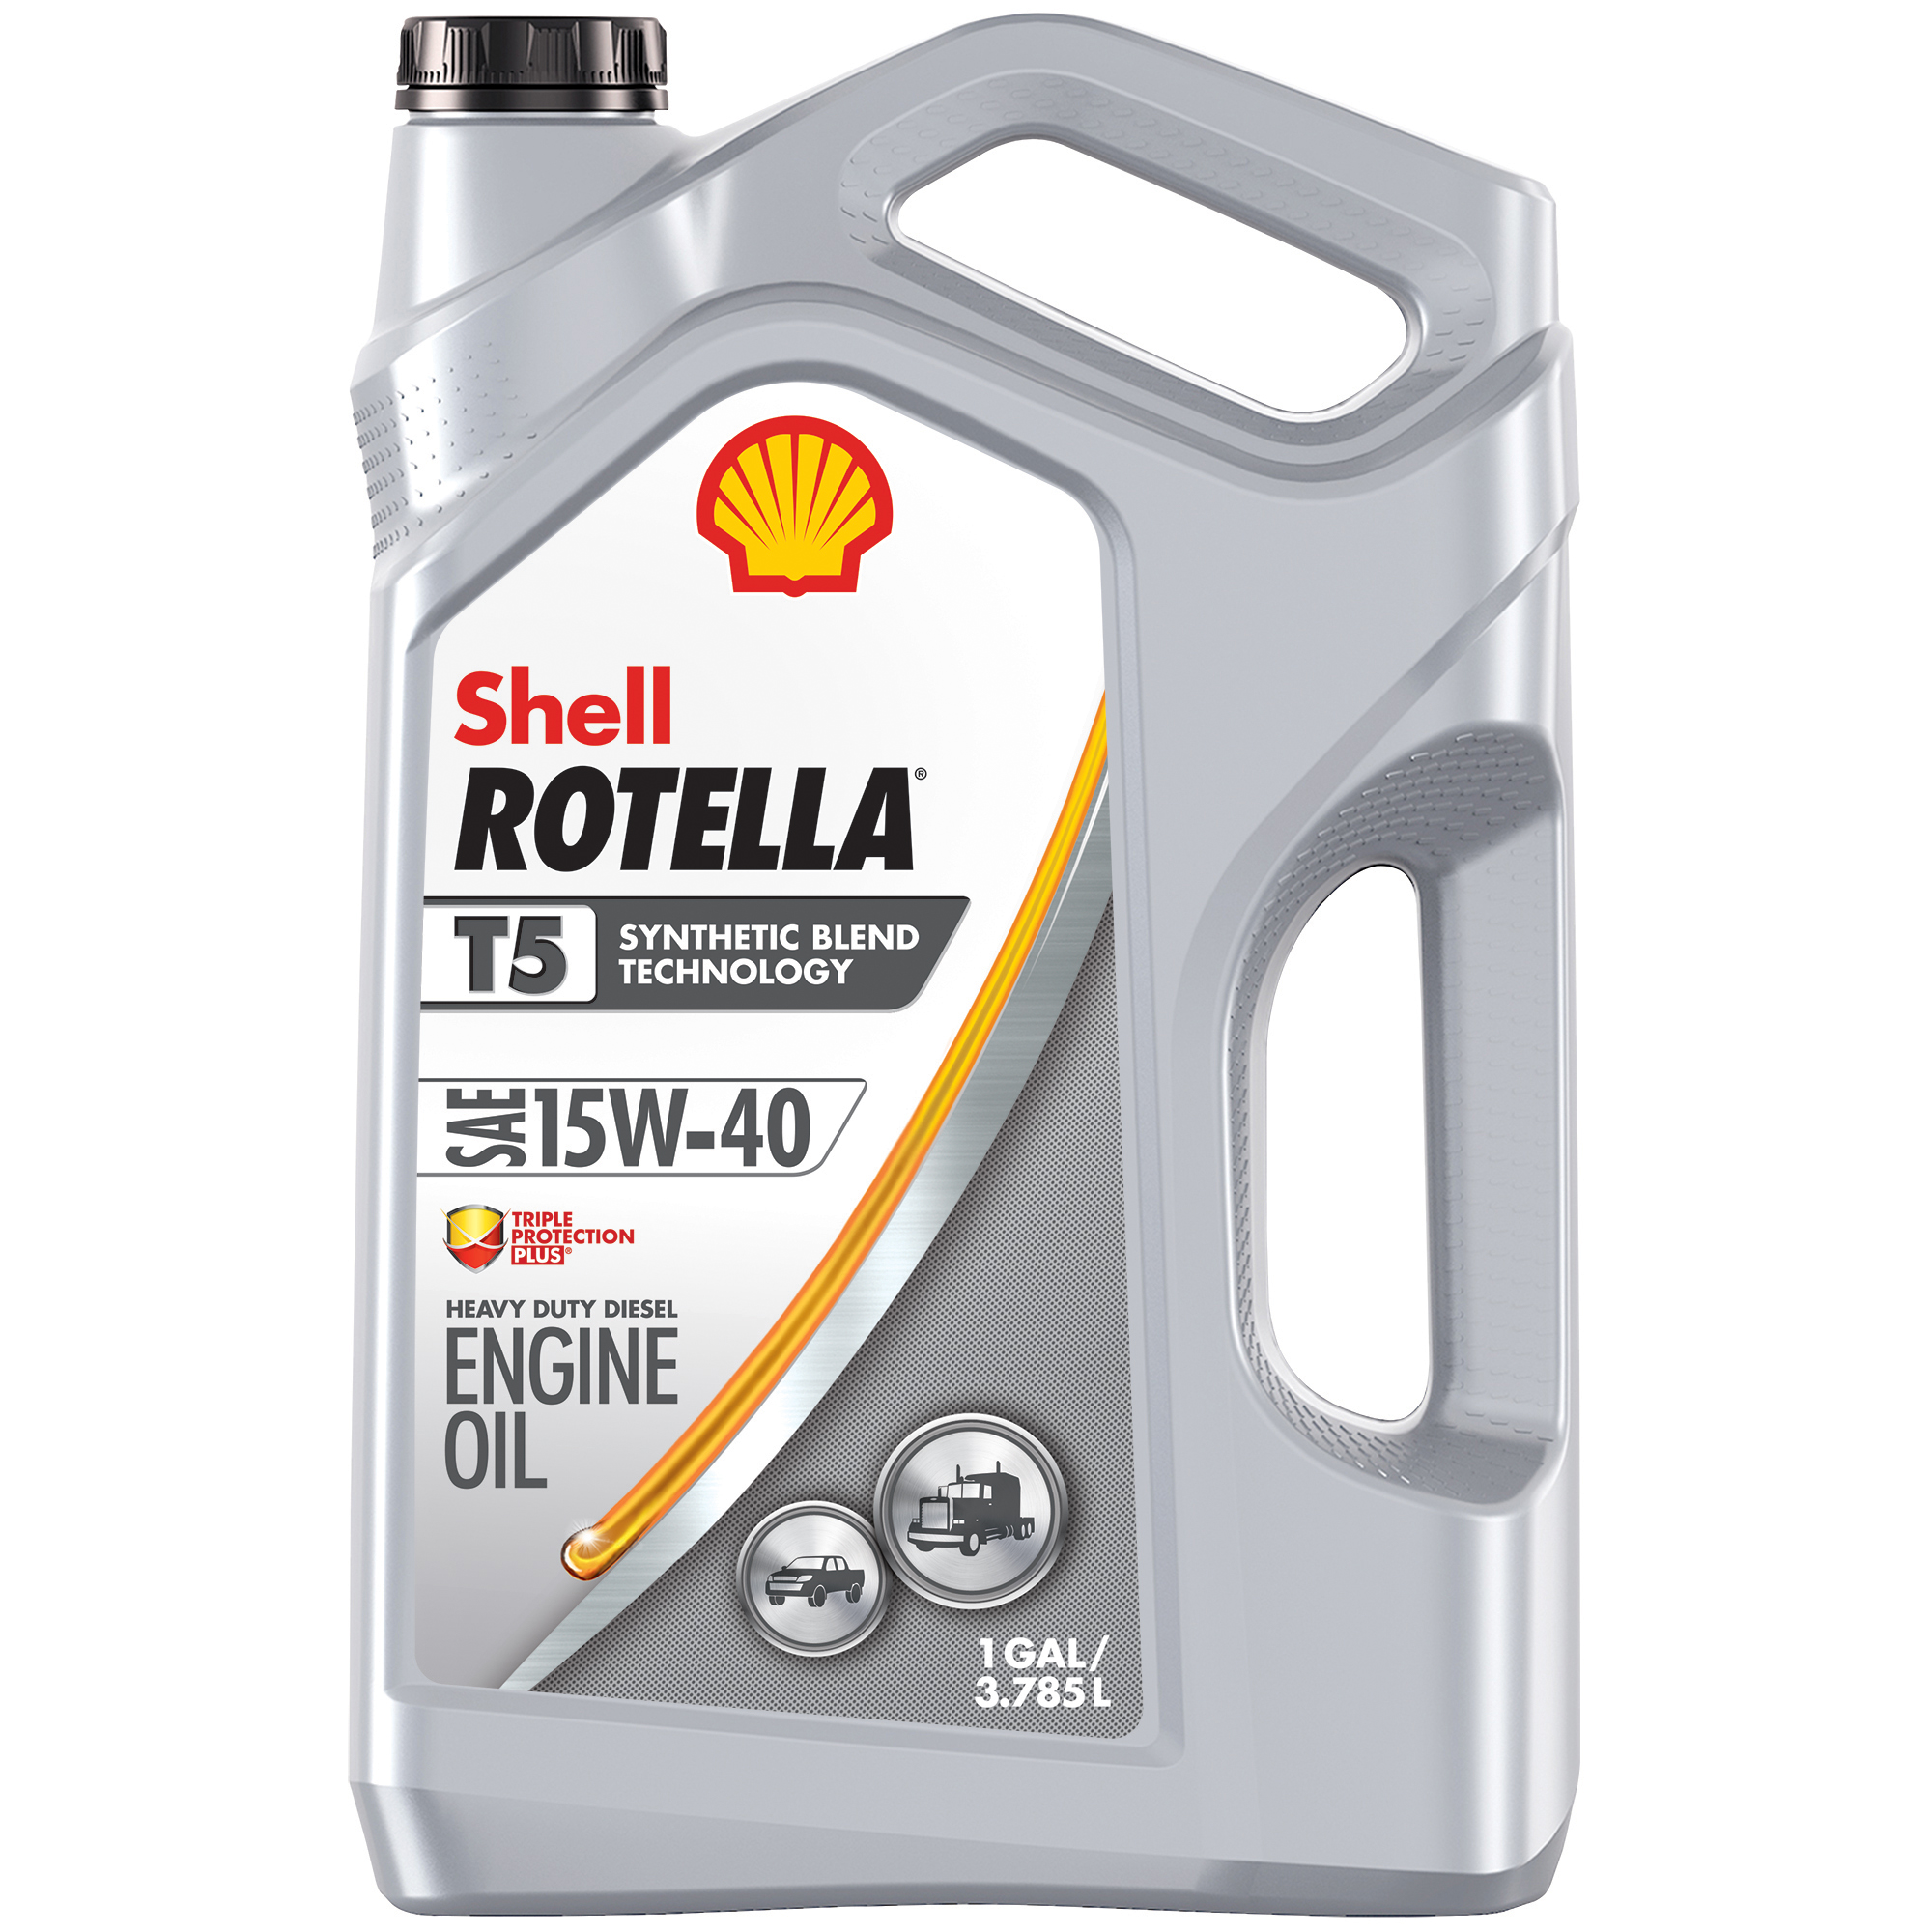 壳牌Rotella T5合成混合柴油机油